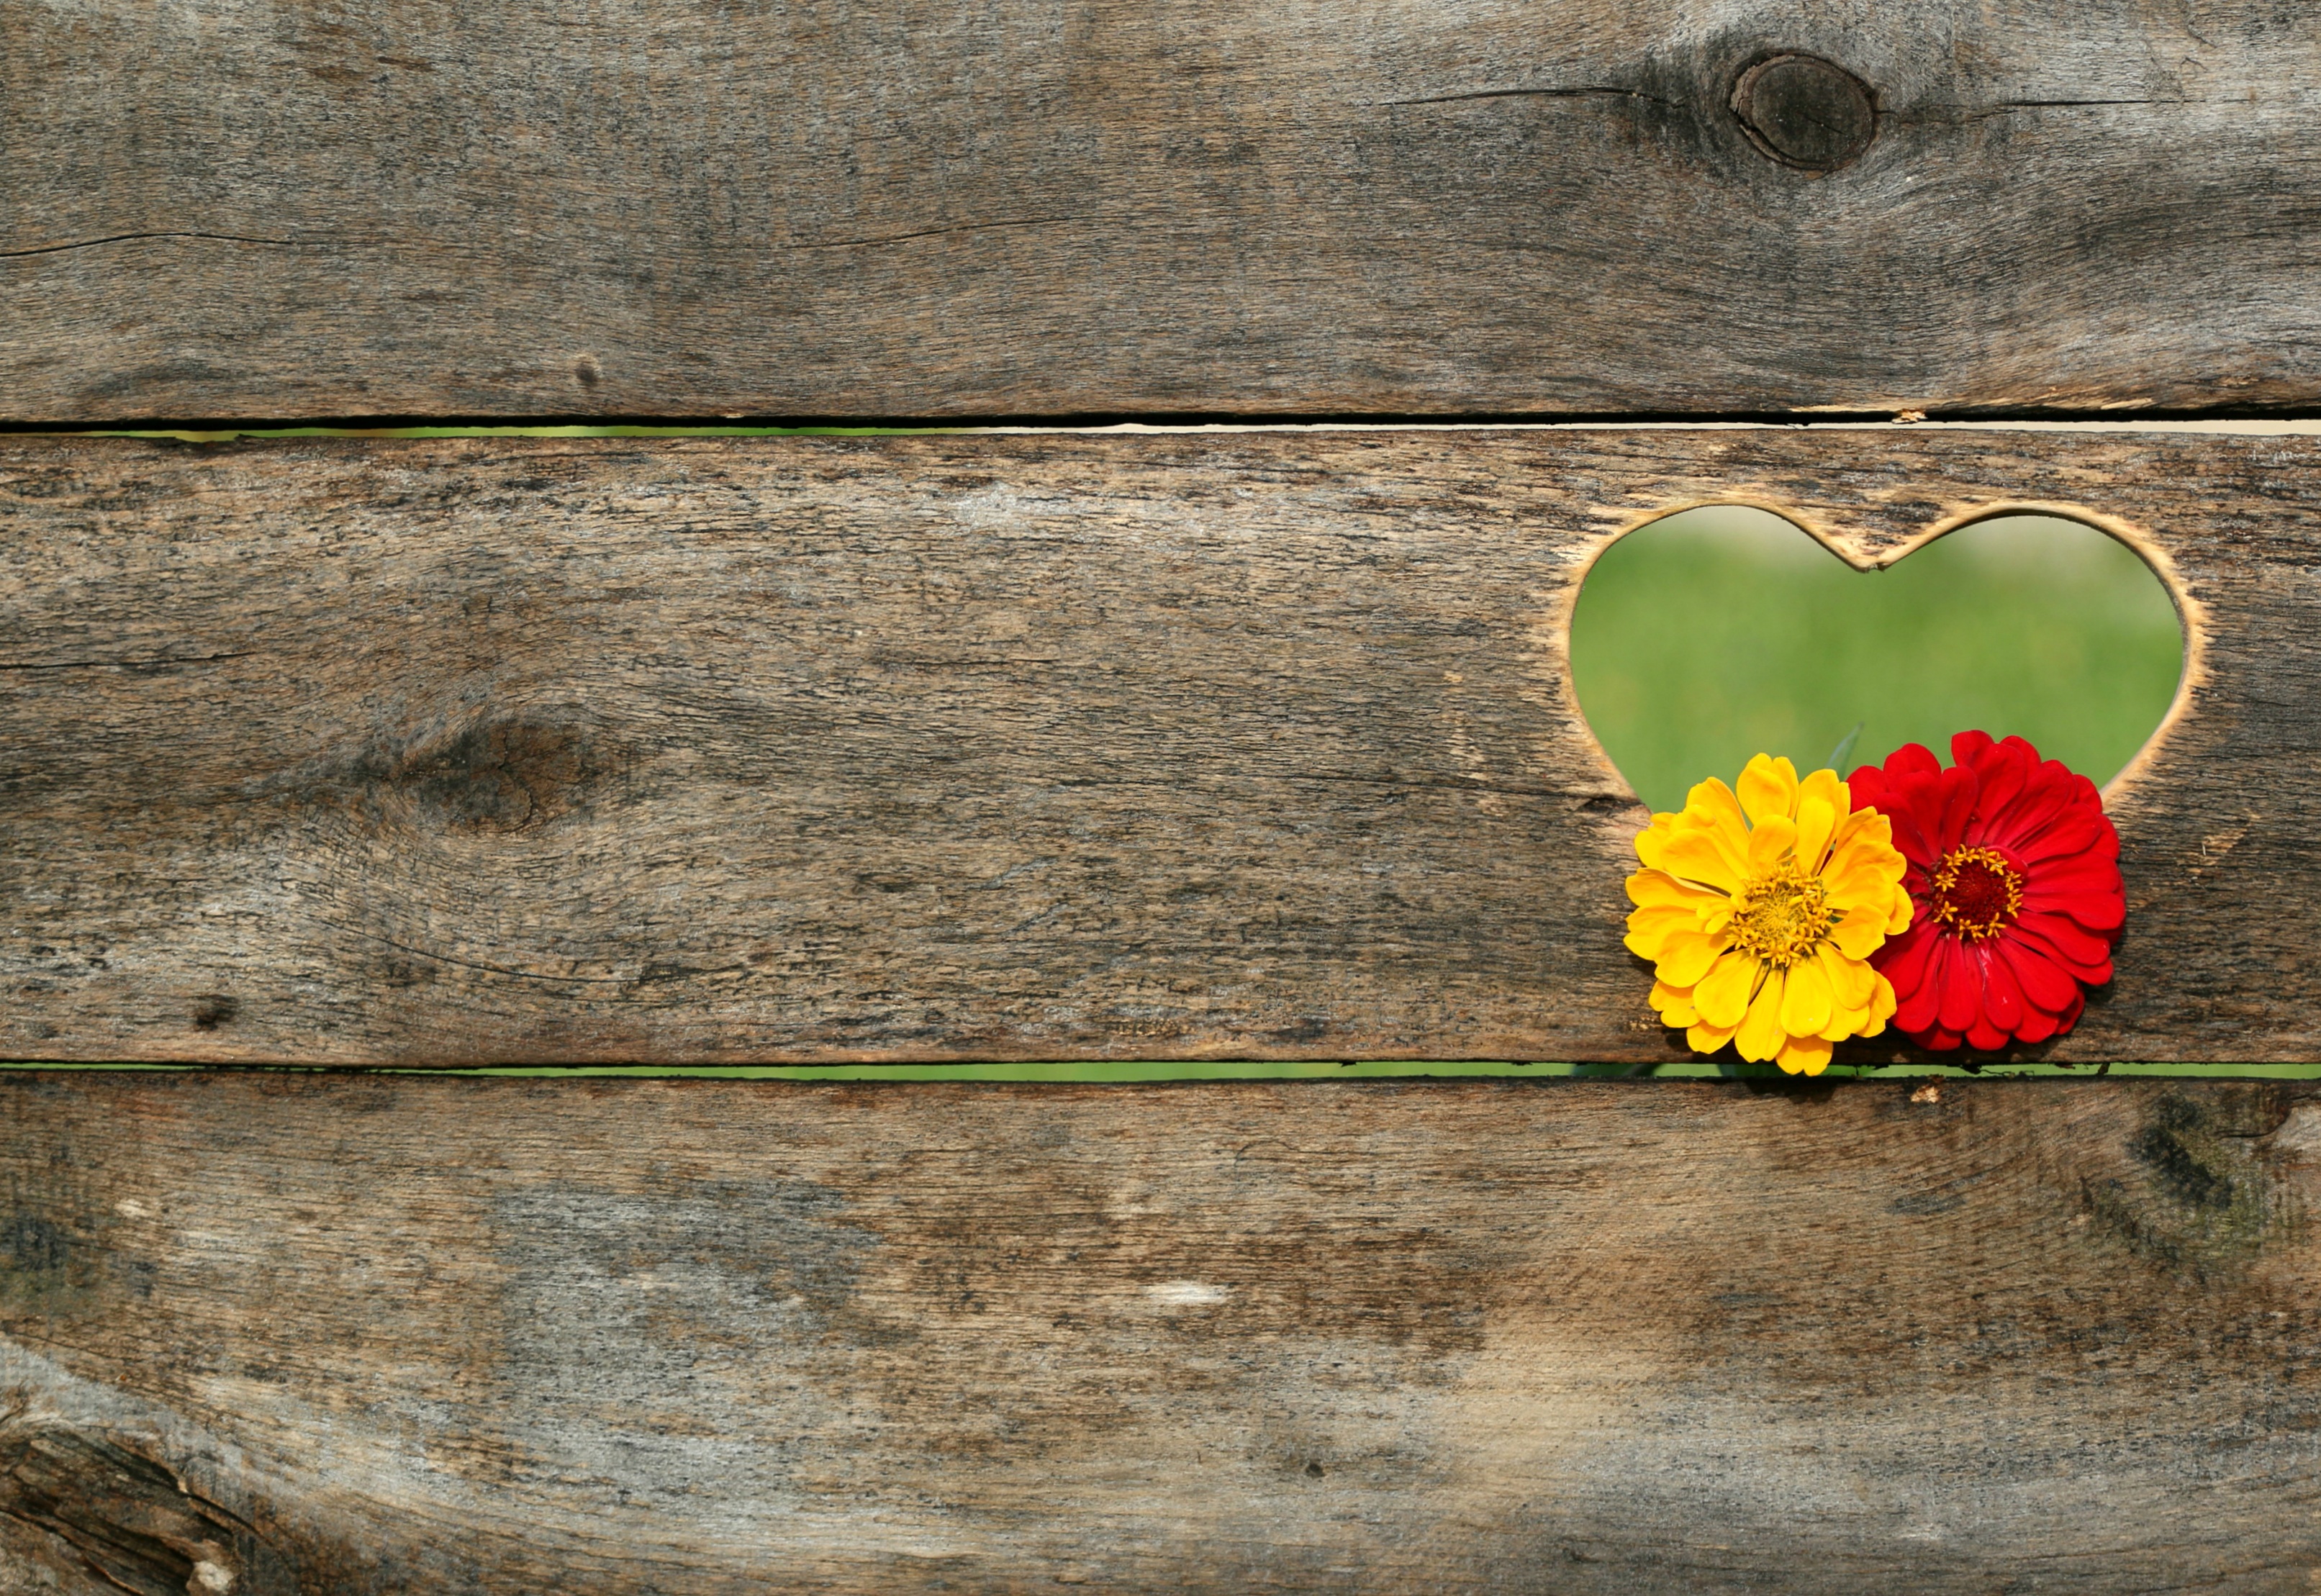 Бесплатное фото Деревянный забор с вырезанным сердечком с цветами